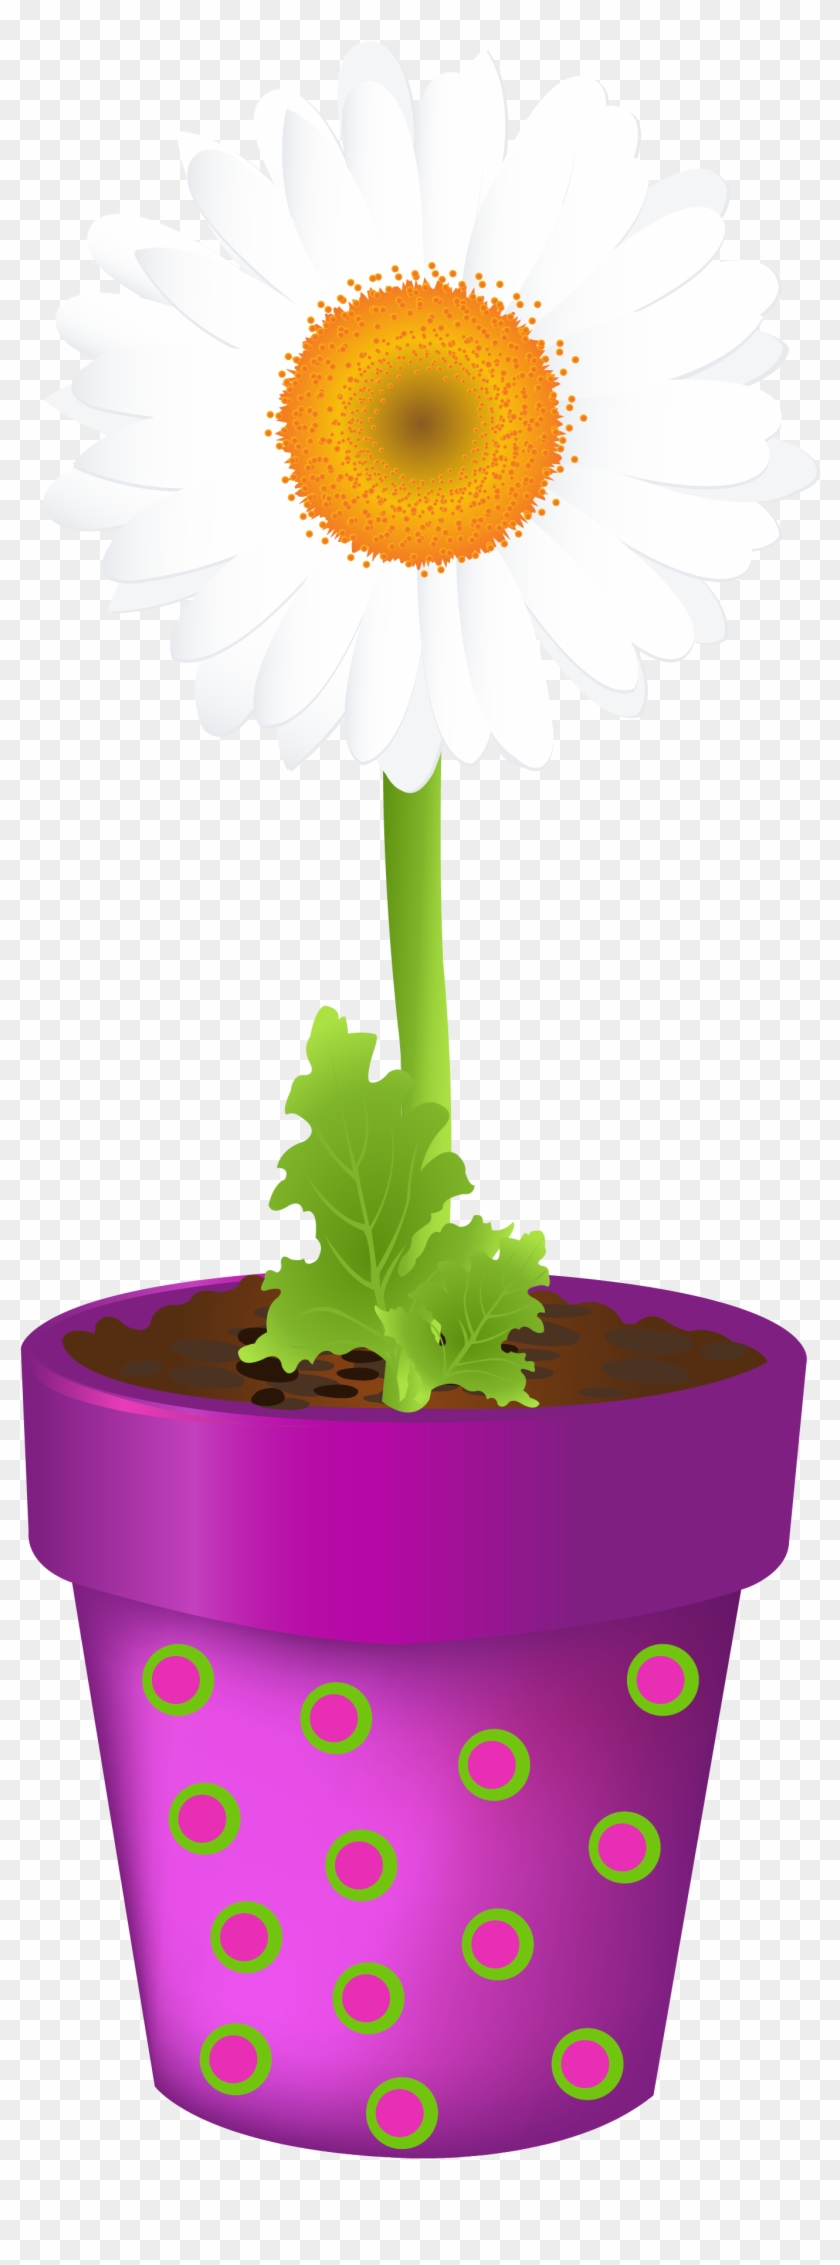 Flowerpot Vase Clip Art - Flowerpot Vase Clip Art #743553